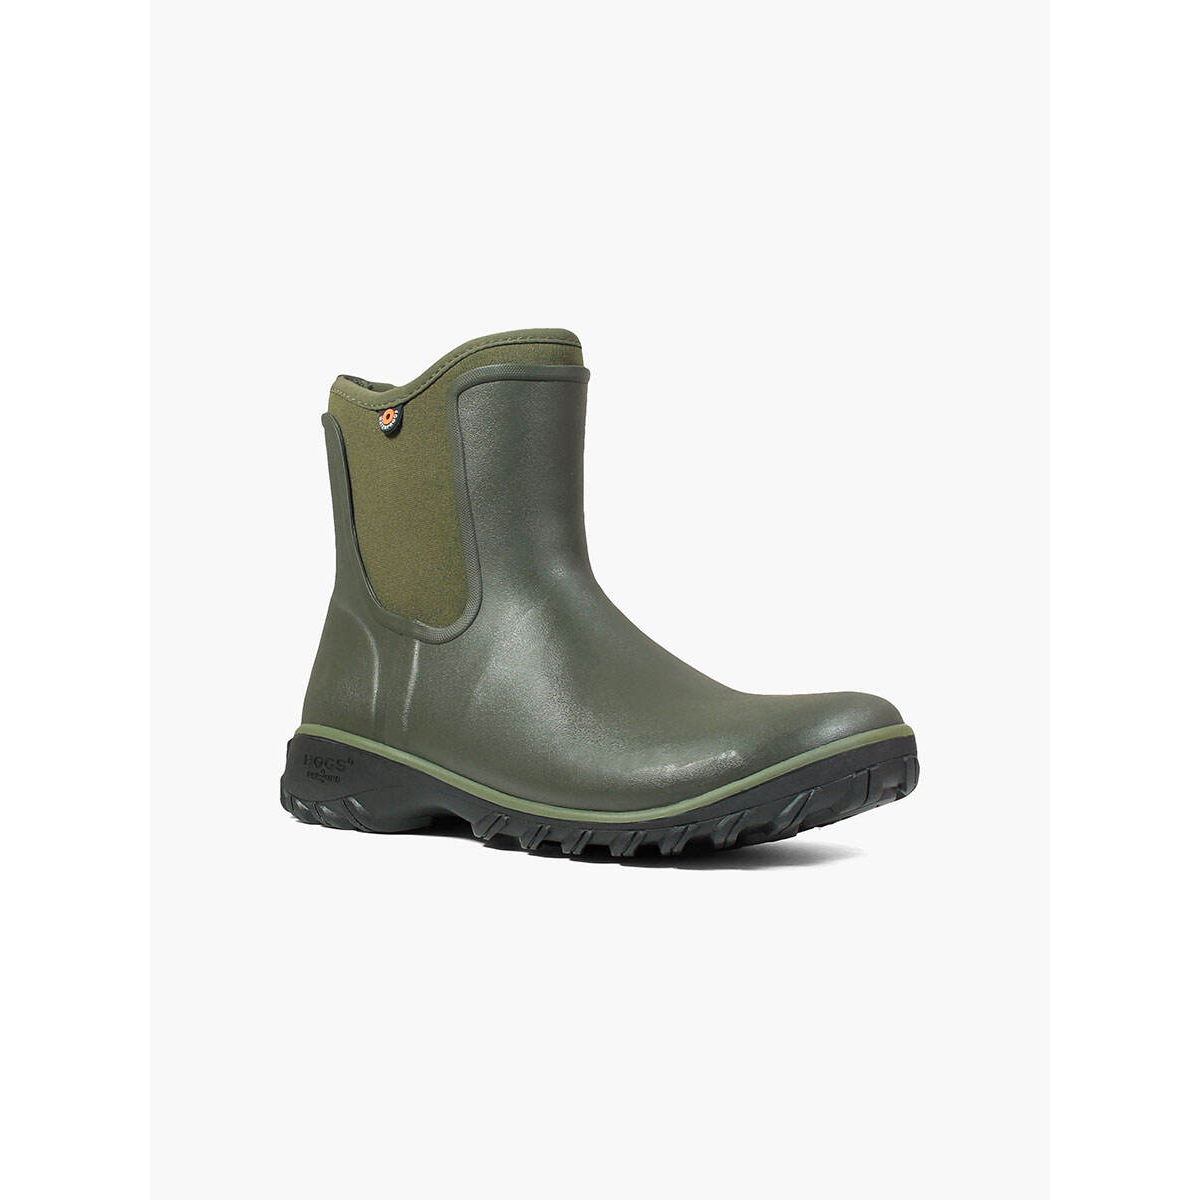 BOGS Women's Sauvie Slip On Waterproof Rain Boots Sage - 72203-306 SAGE - SAGE, 10